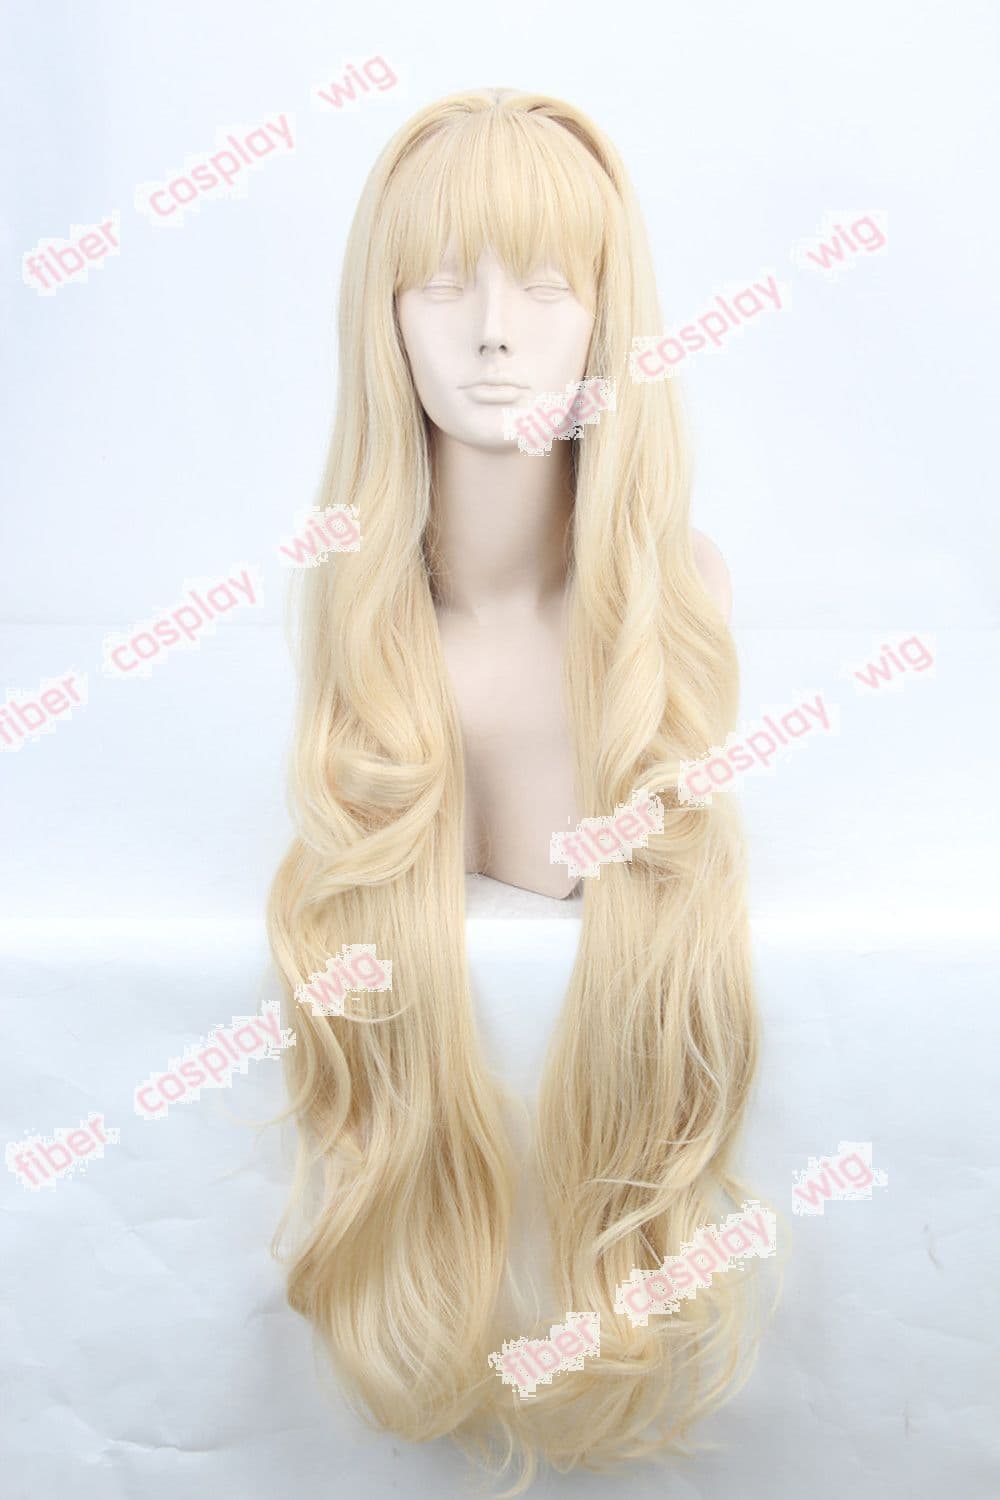 VOCALOID 3 SEEU Super Long Golden Blonde Cosplay Wigs